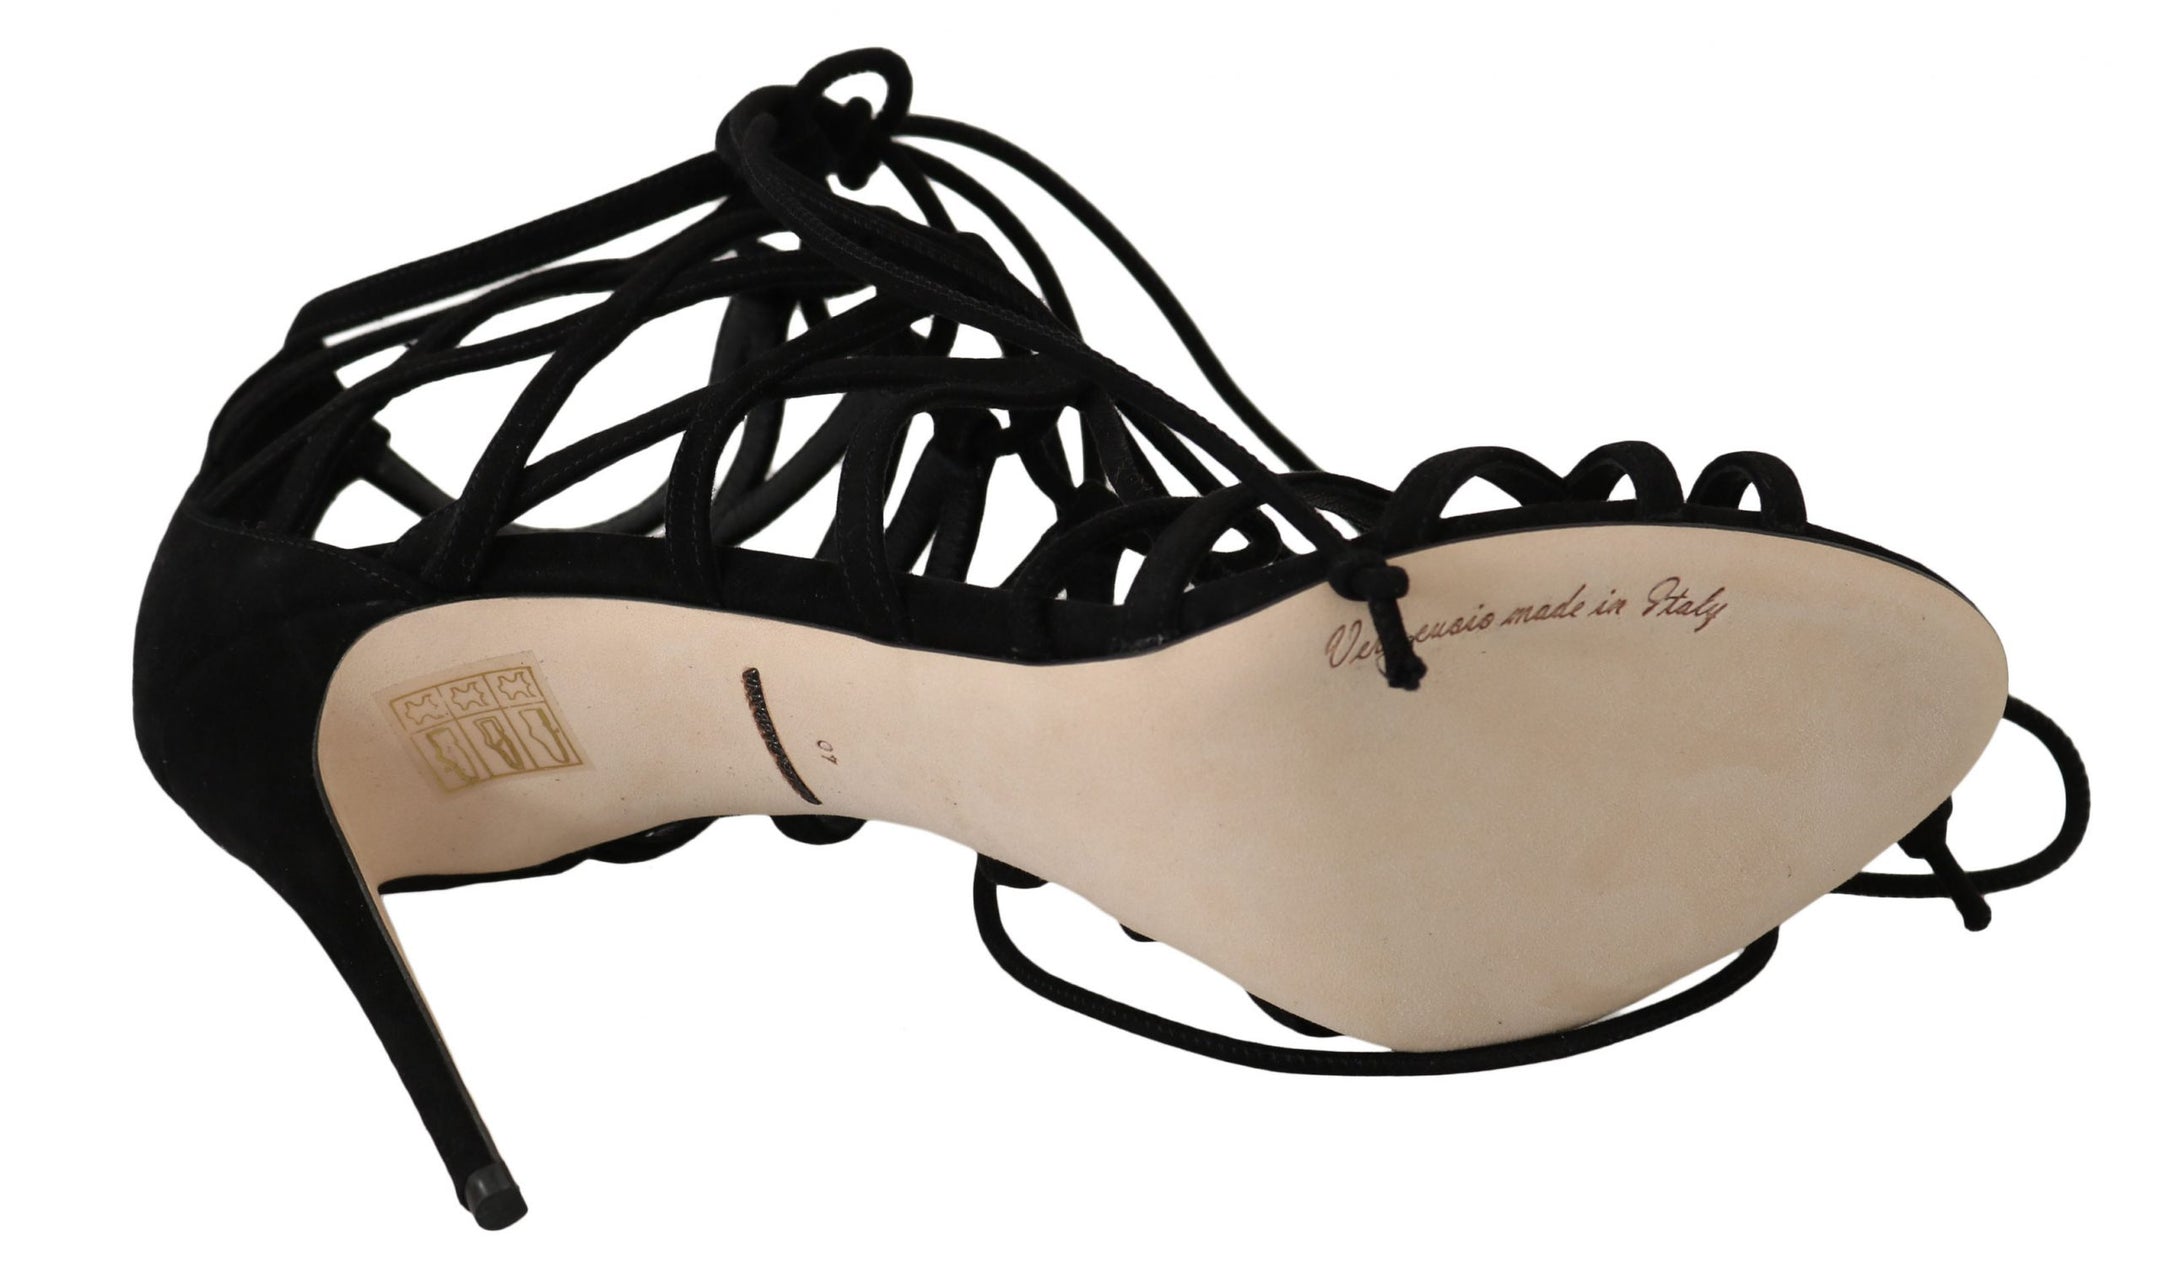 Buy Black Suede Strap Stilettos Sandals by Dolce & Gabbana